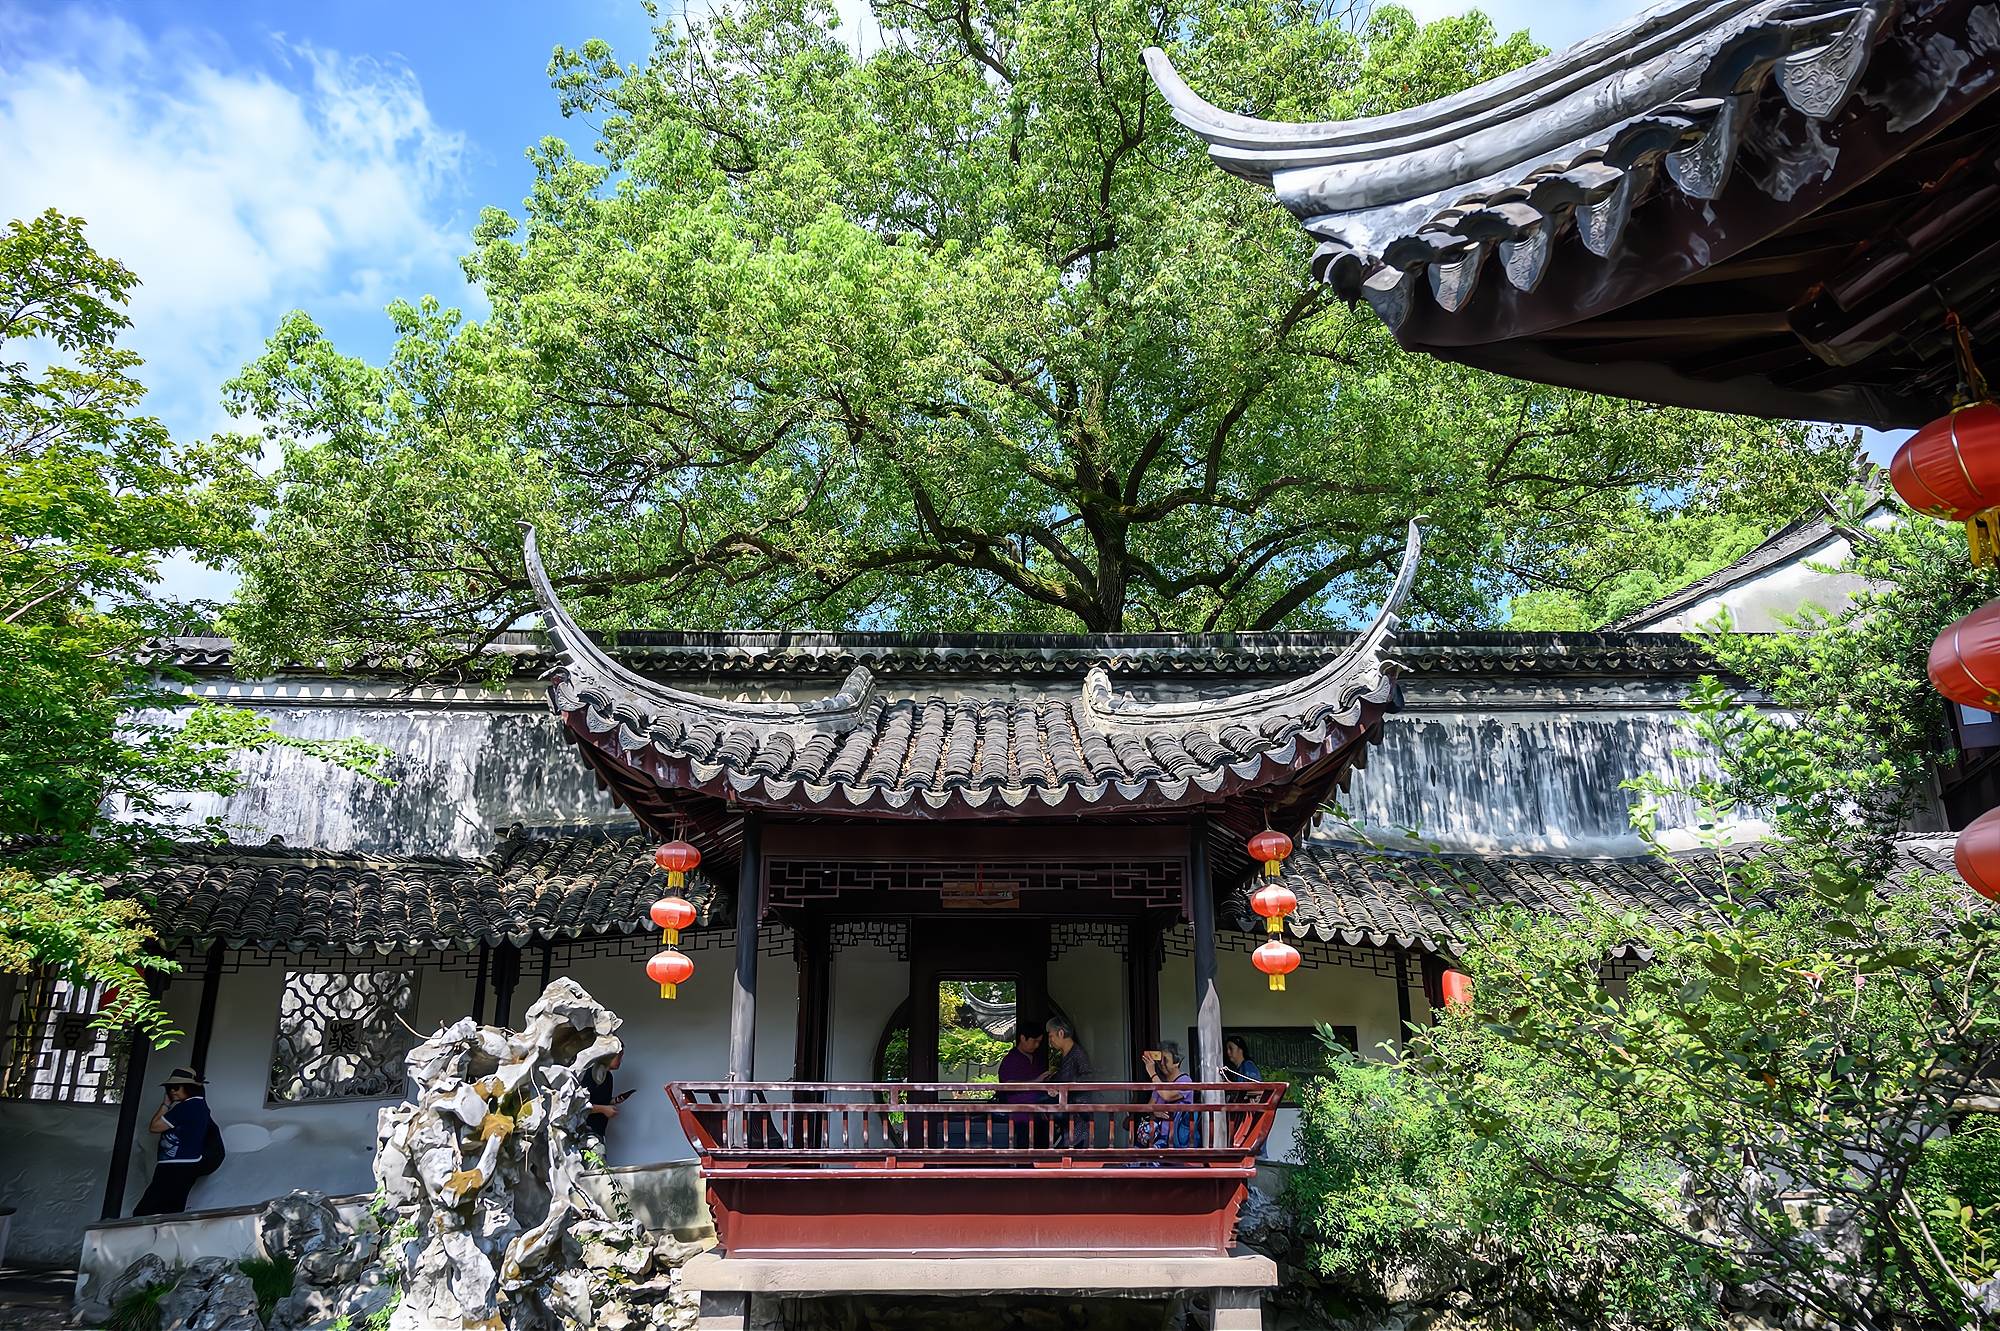 藏在千年古镇中的世界文化遗产,堪称江南园林的典范,你去过吗?